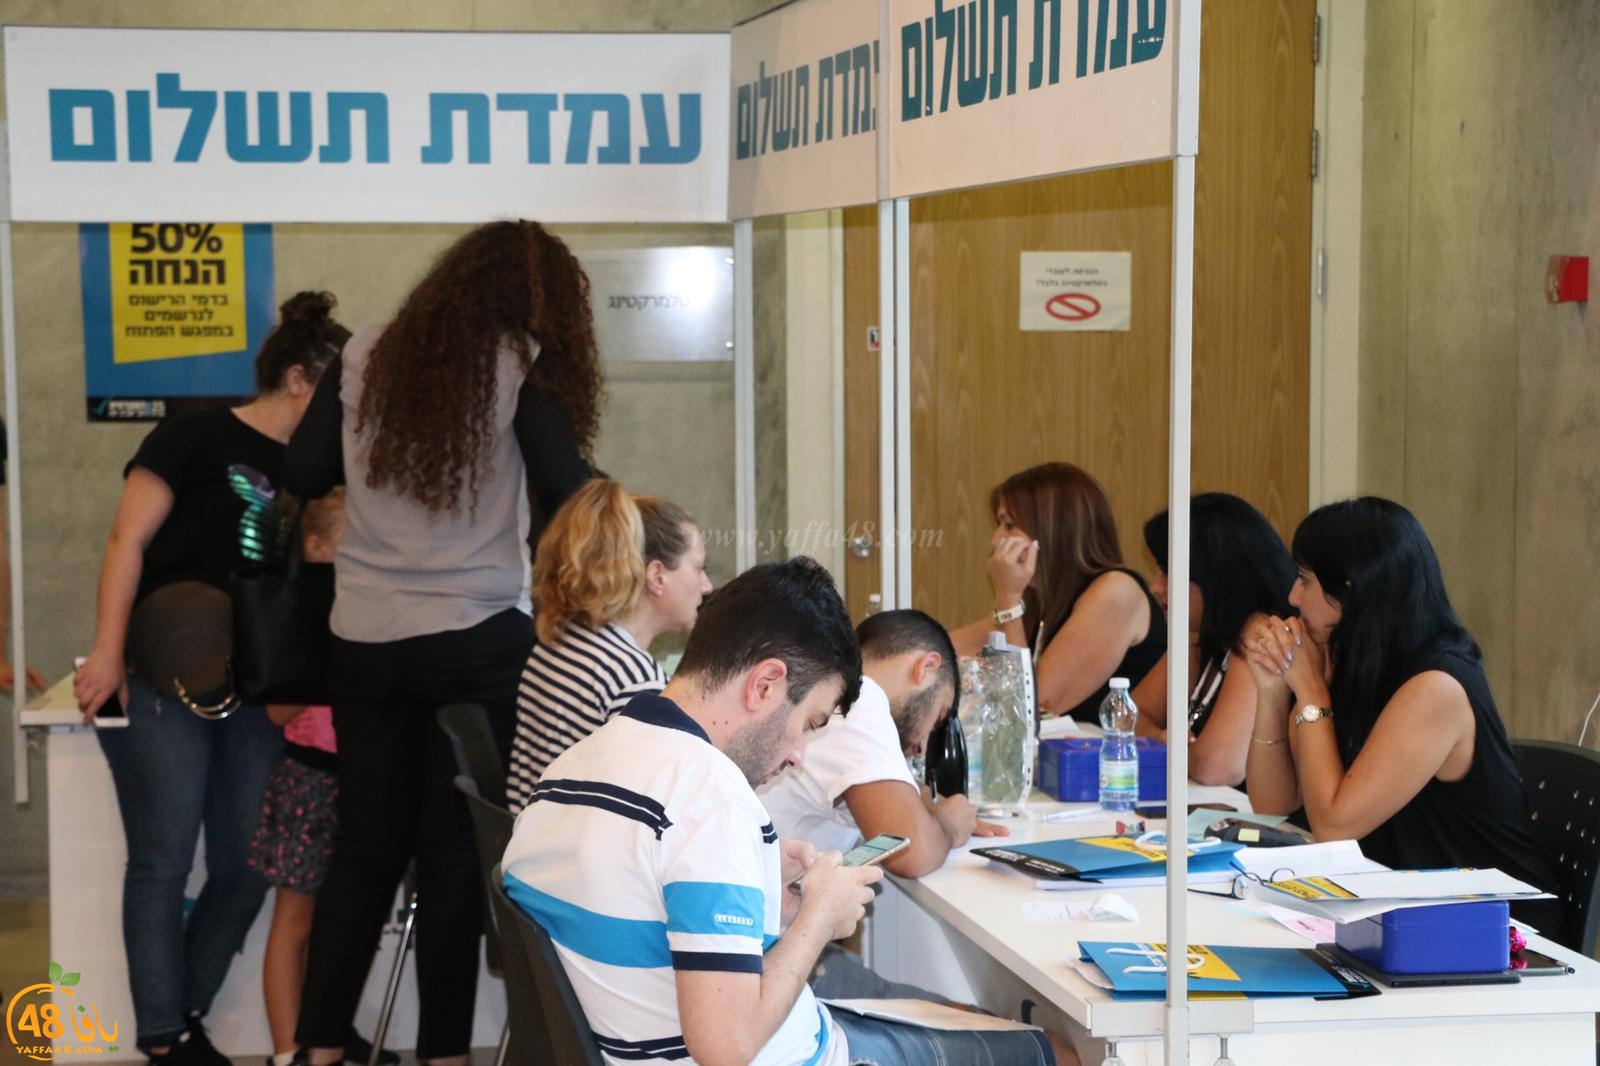  بالصور: الكلية الأكاديمية تل أبيب يافا تُنظم يوماً مفتوحاً بمشاركة العديد من الطلاب العرب